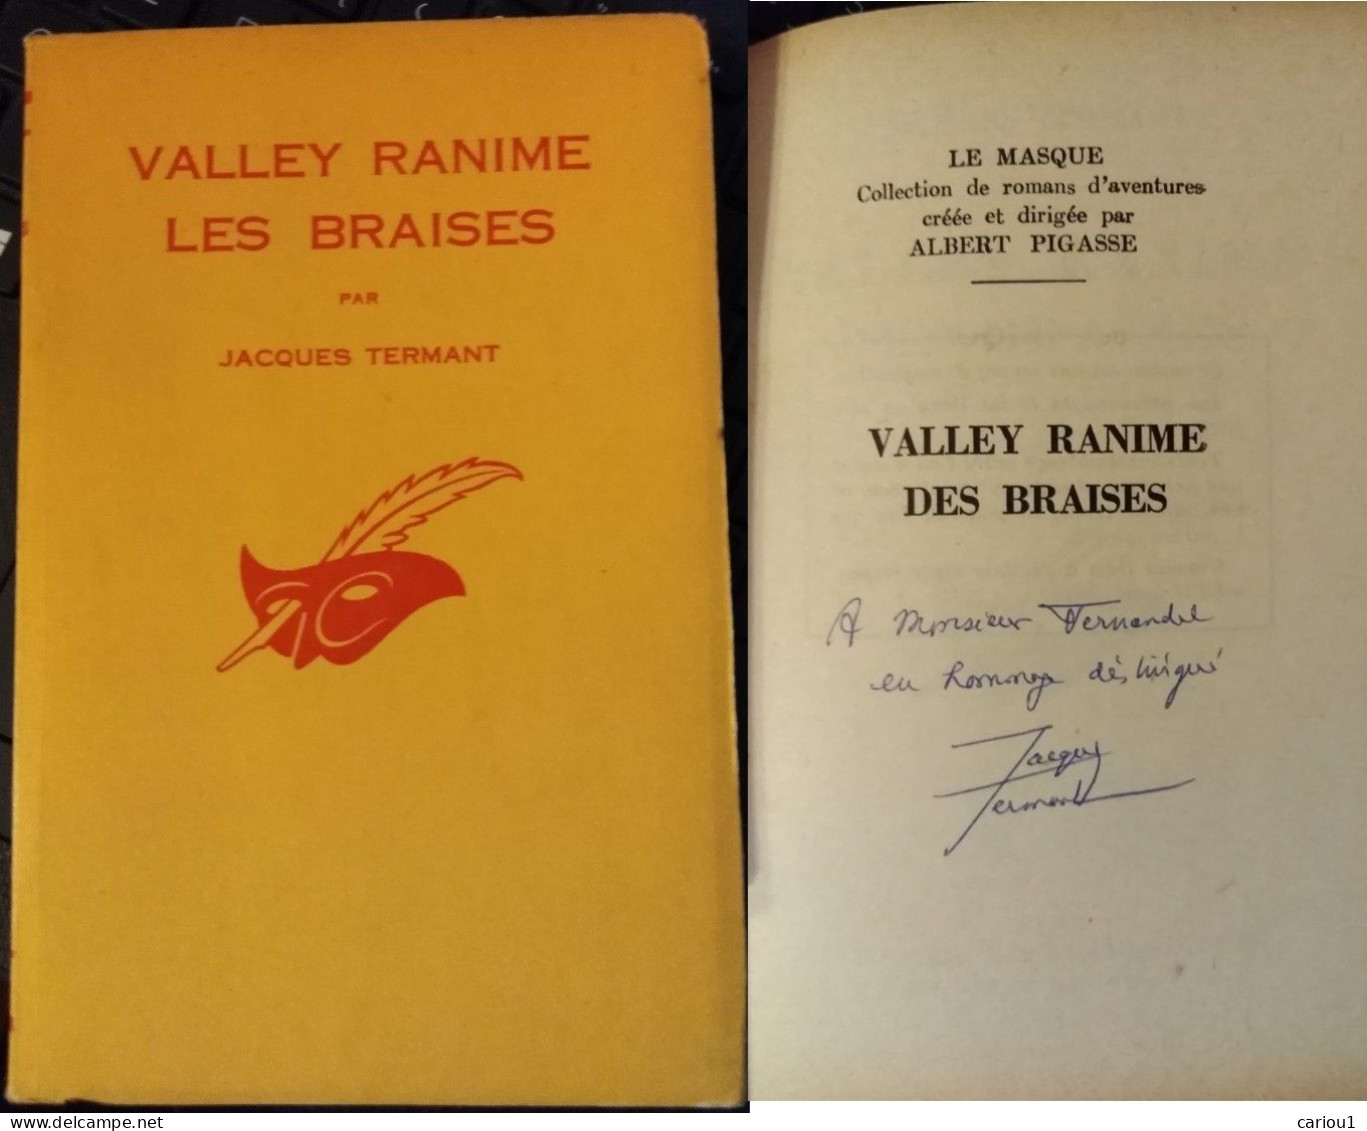 C1 Francois BALSAN Termant VALLEY RANIME LES BRAISES 1962 Envoi DEDICACE SIGNED Port Inclus France - Autographed